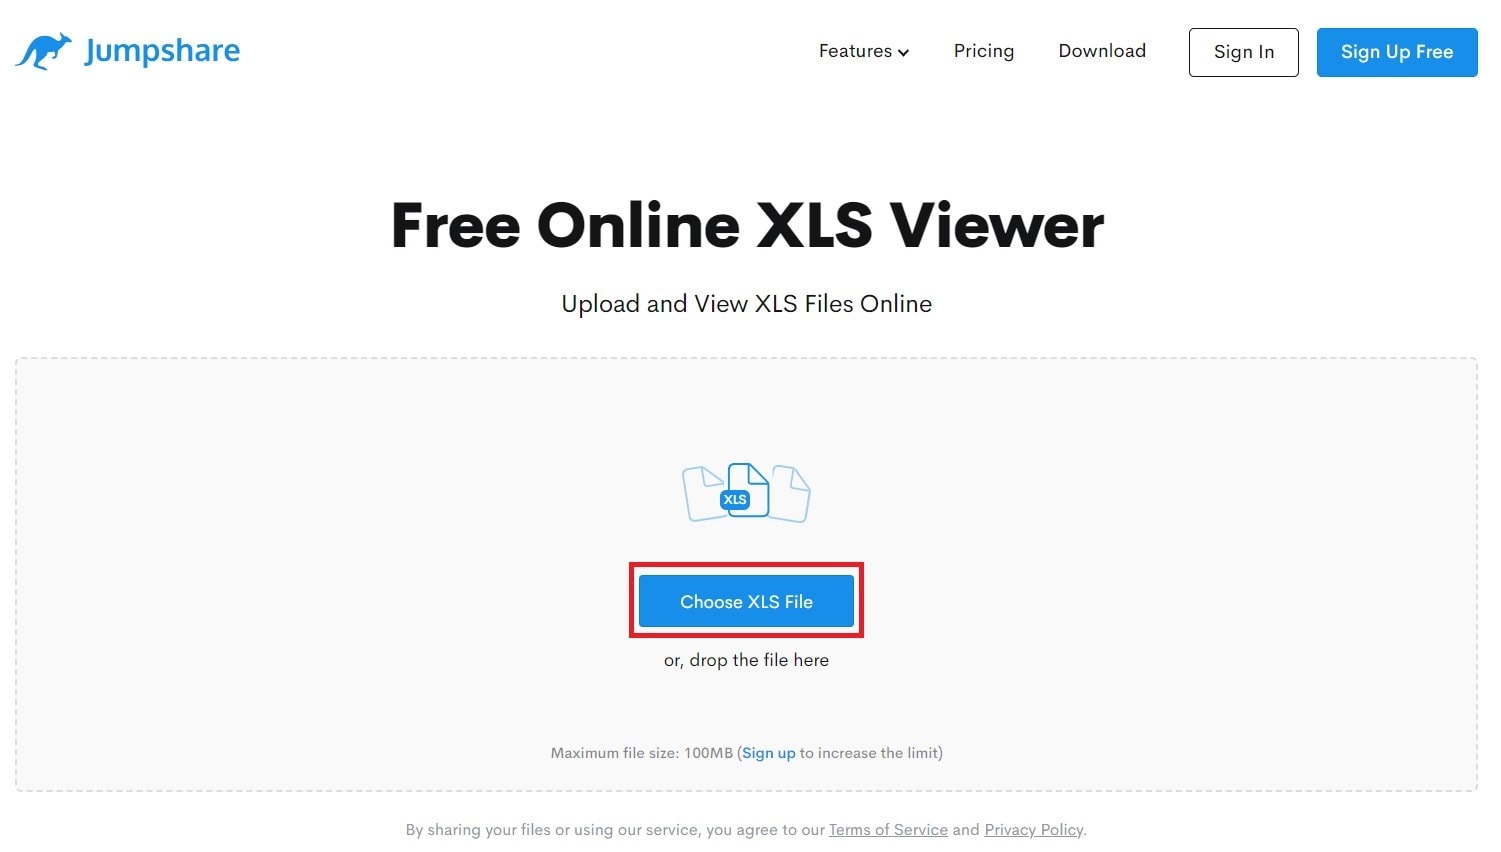 upload xls online free in jumpshare xls viewer